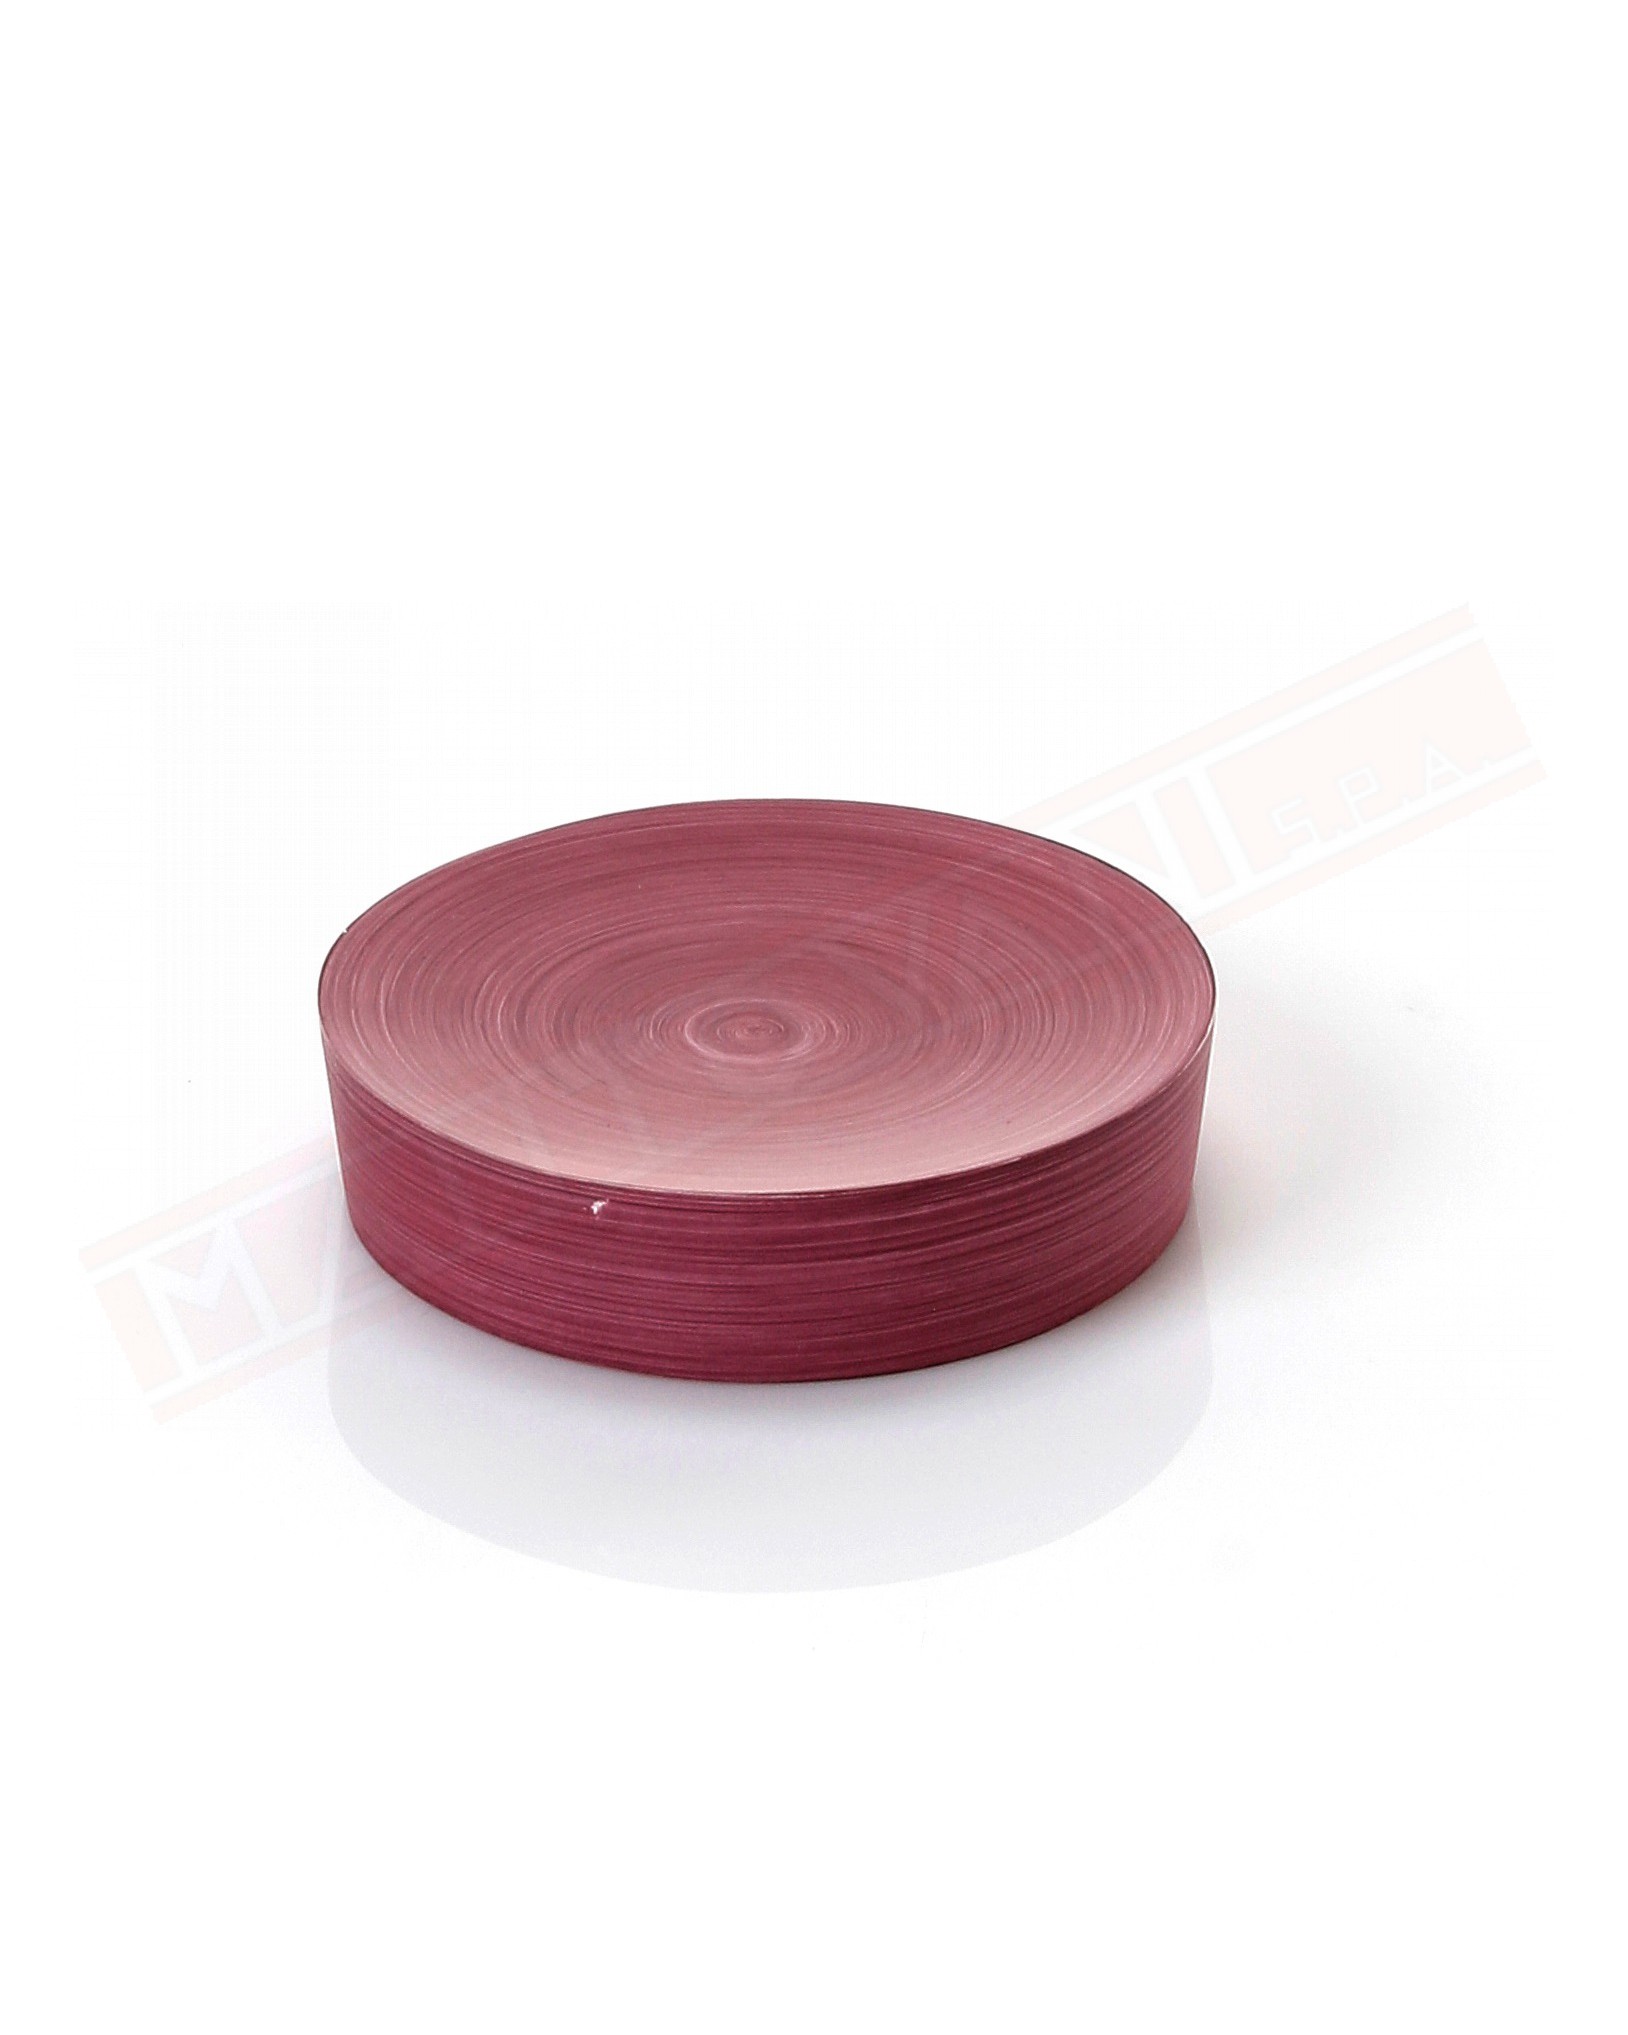 Gedy G. Sole portasapone in resina color viola misure diametro art 7,2x12,2